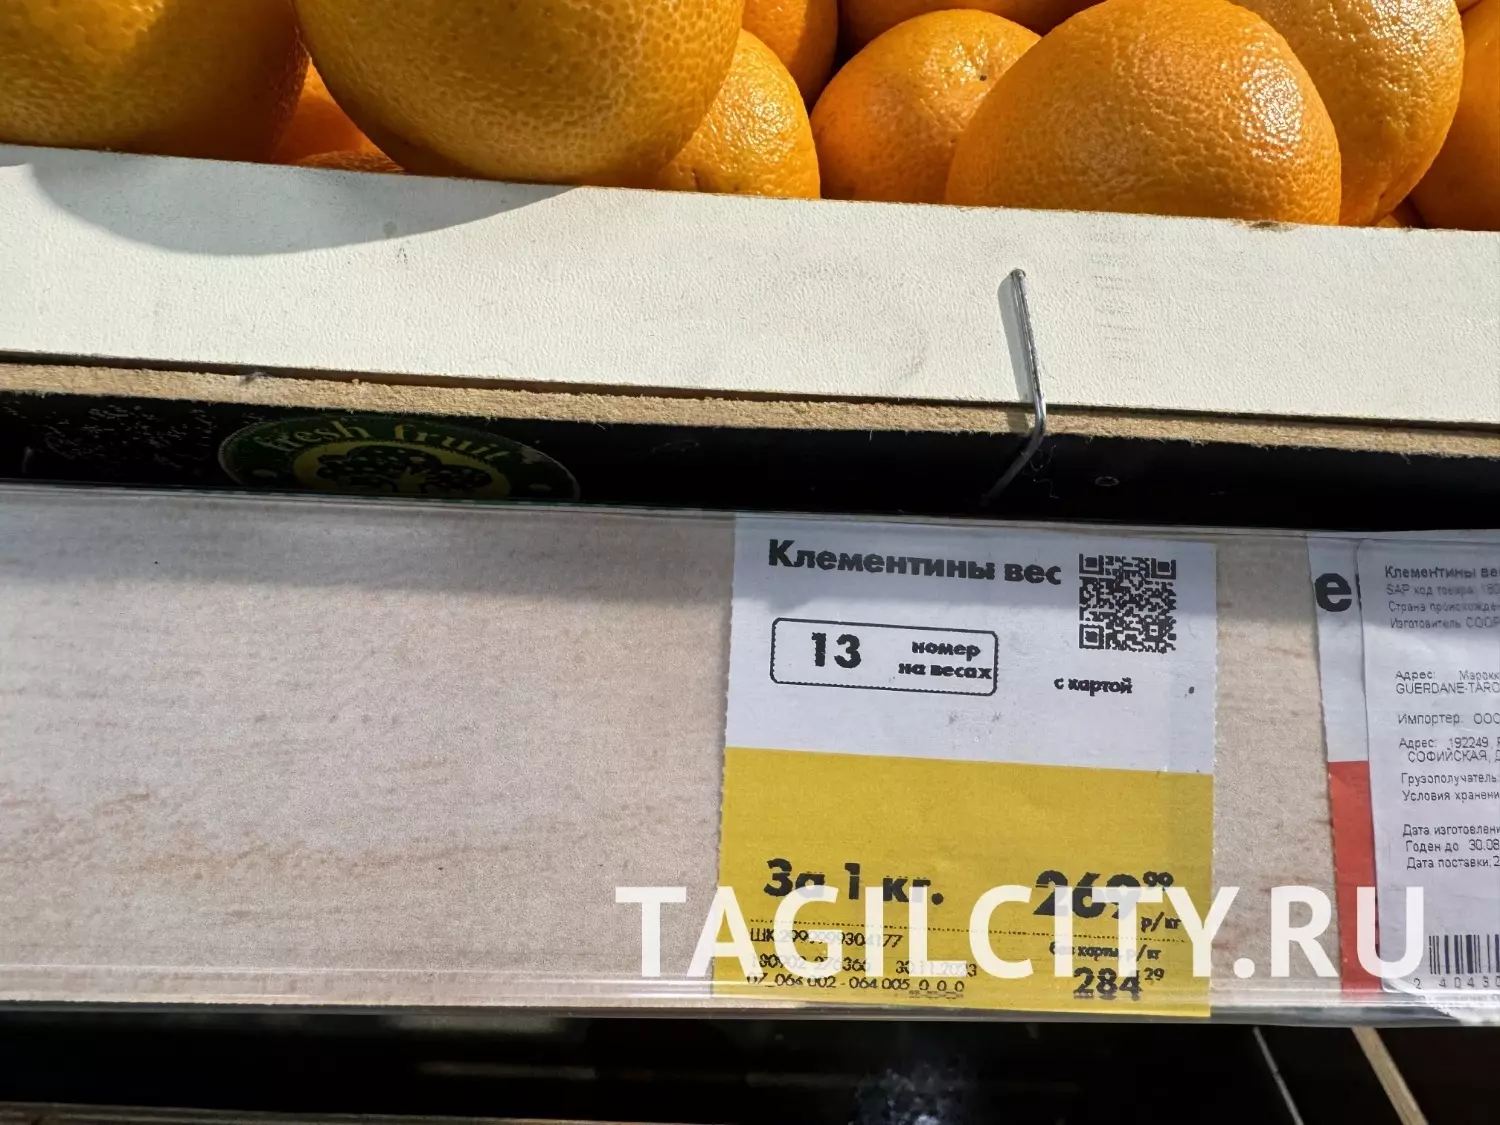 Цены на мандарины в Нижнем Тагиле